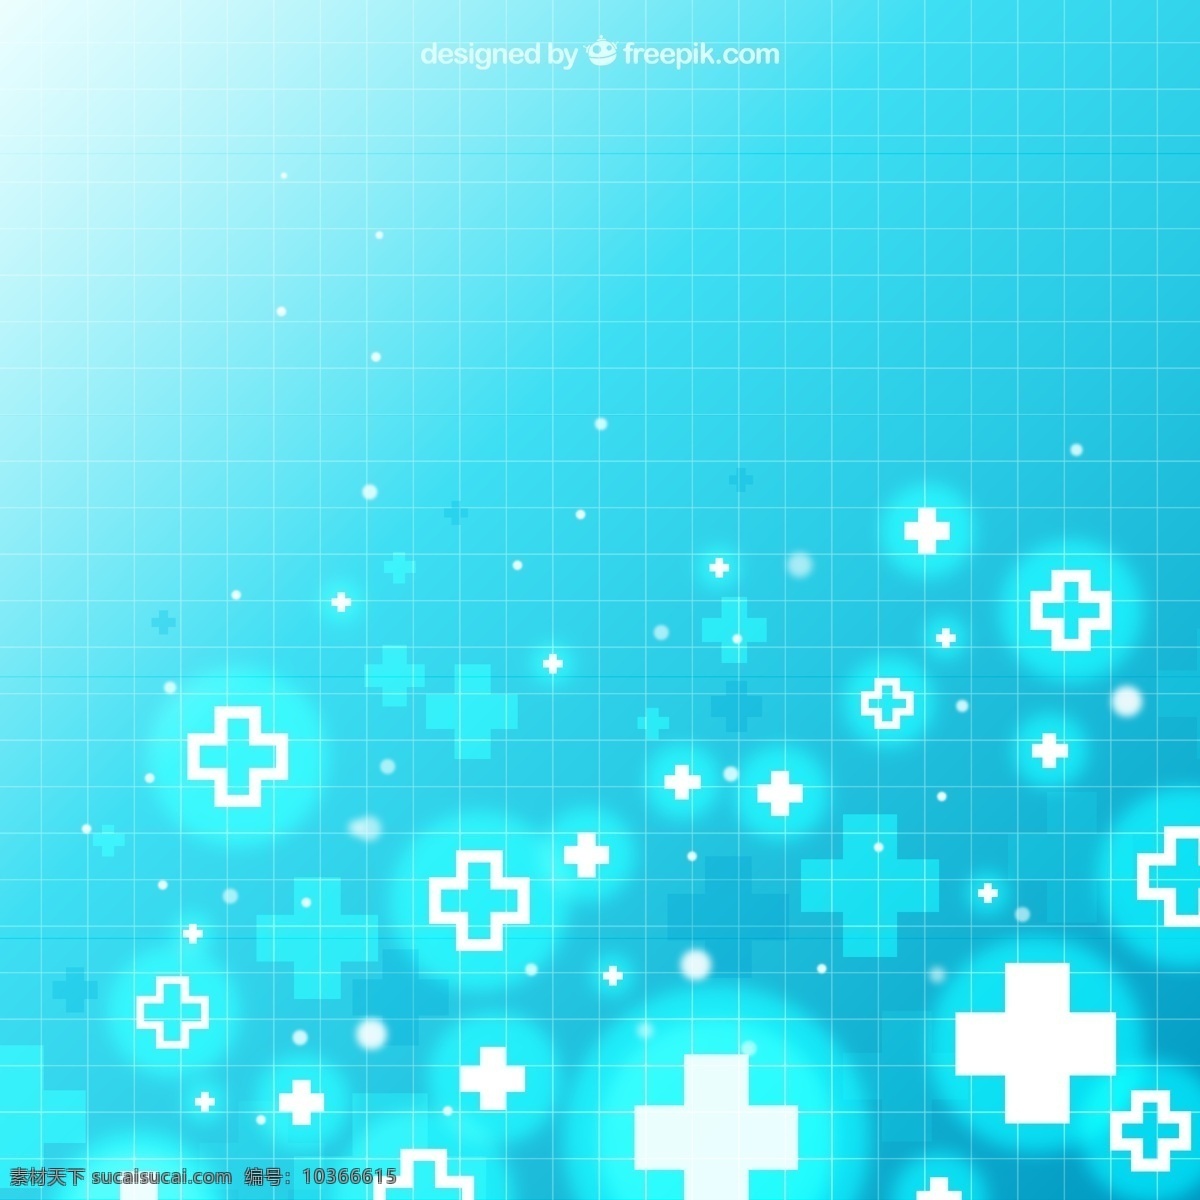 蓝色 医疗 符号 背景图片 医疗符号 背景 矢量图 格式 矢量 高清图片